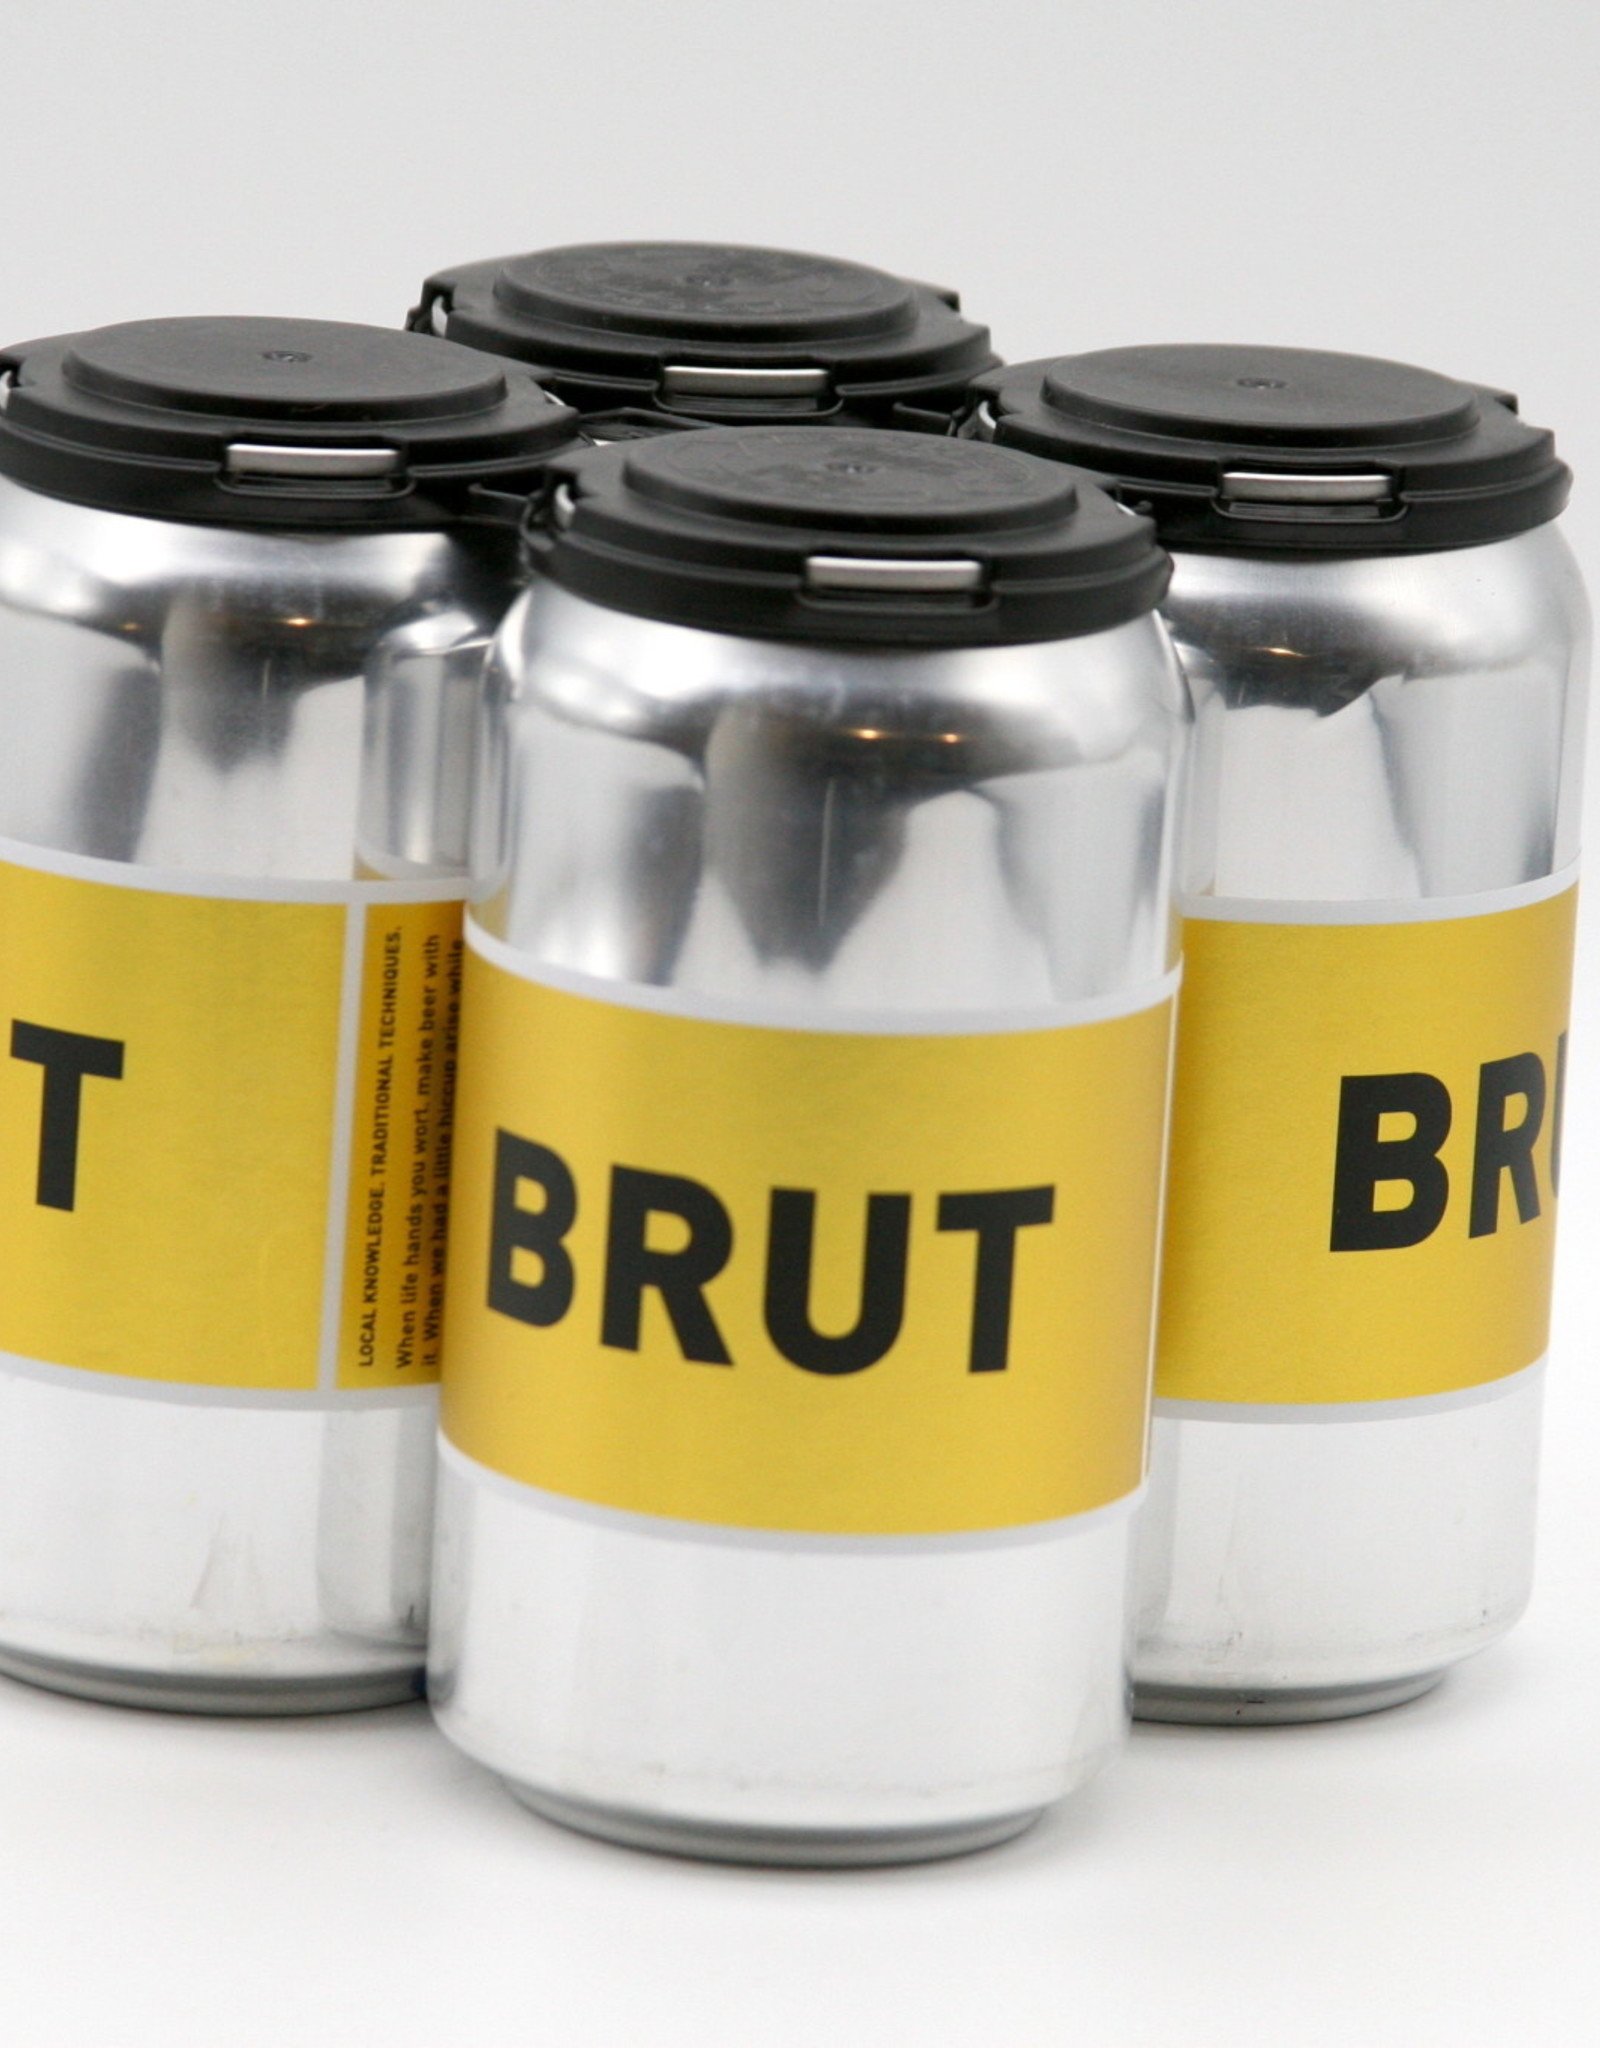 Field Recordings "Brut" Beer